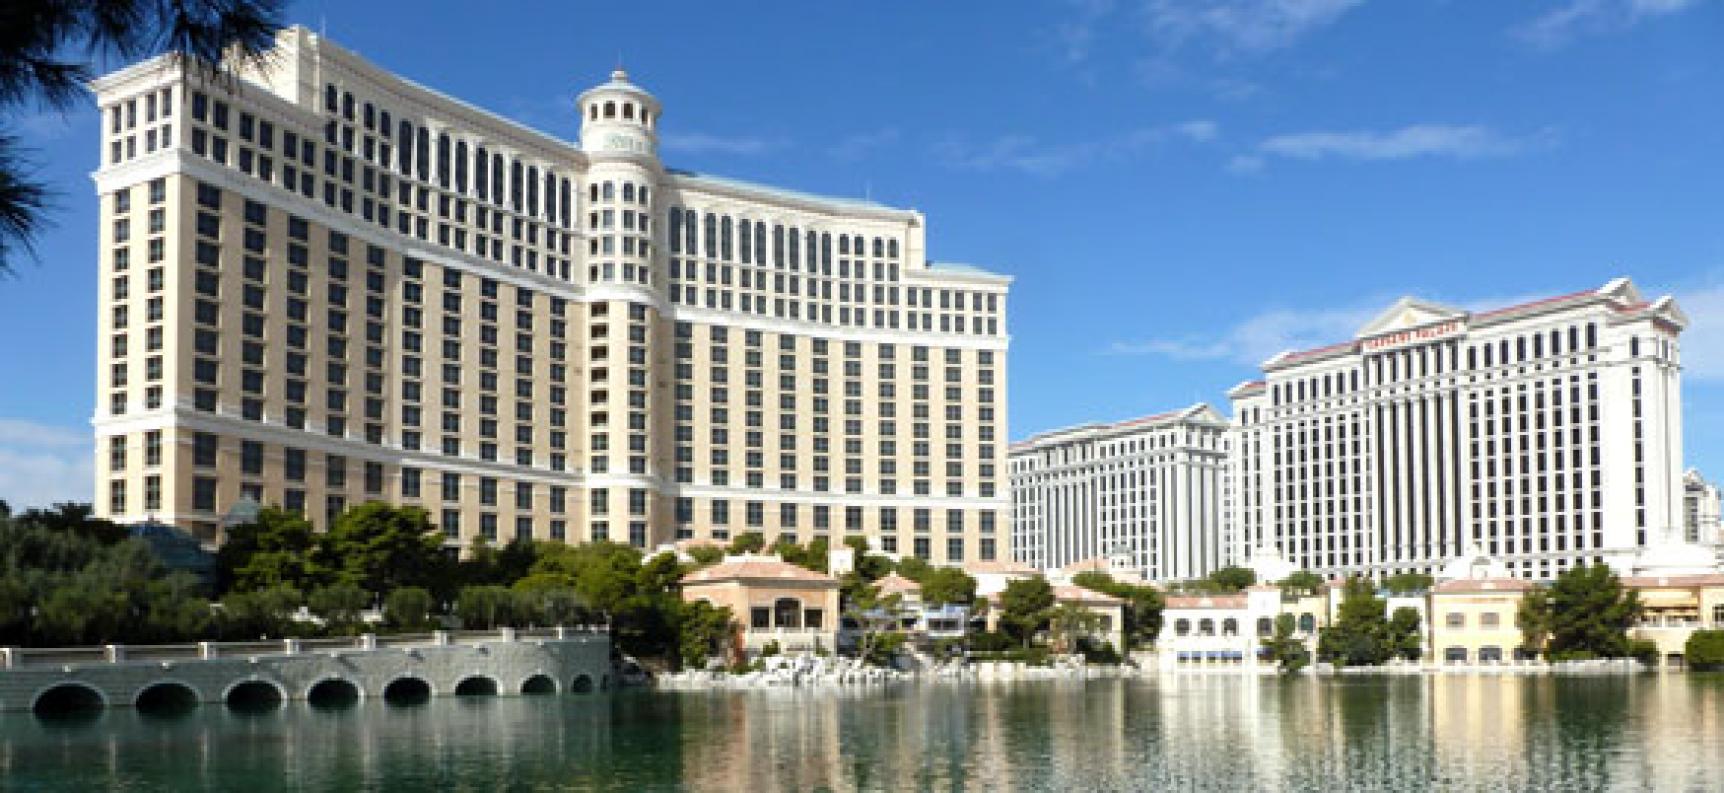 Bellagio Hotel in Las Vegas